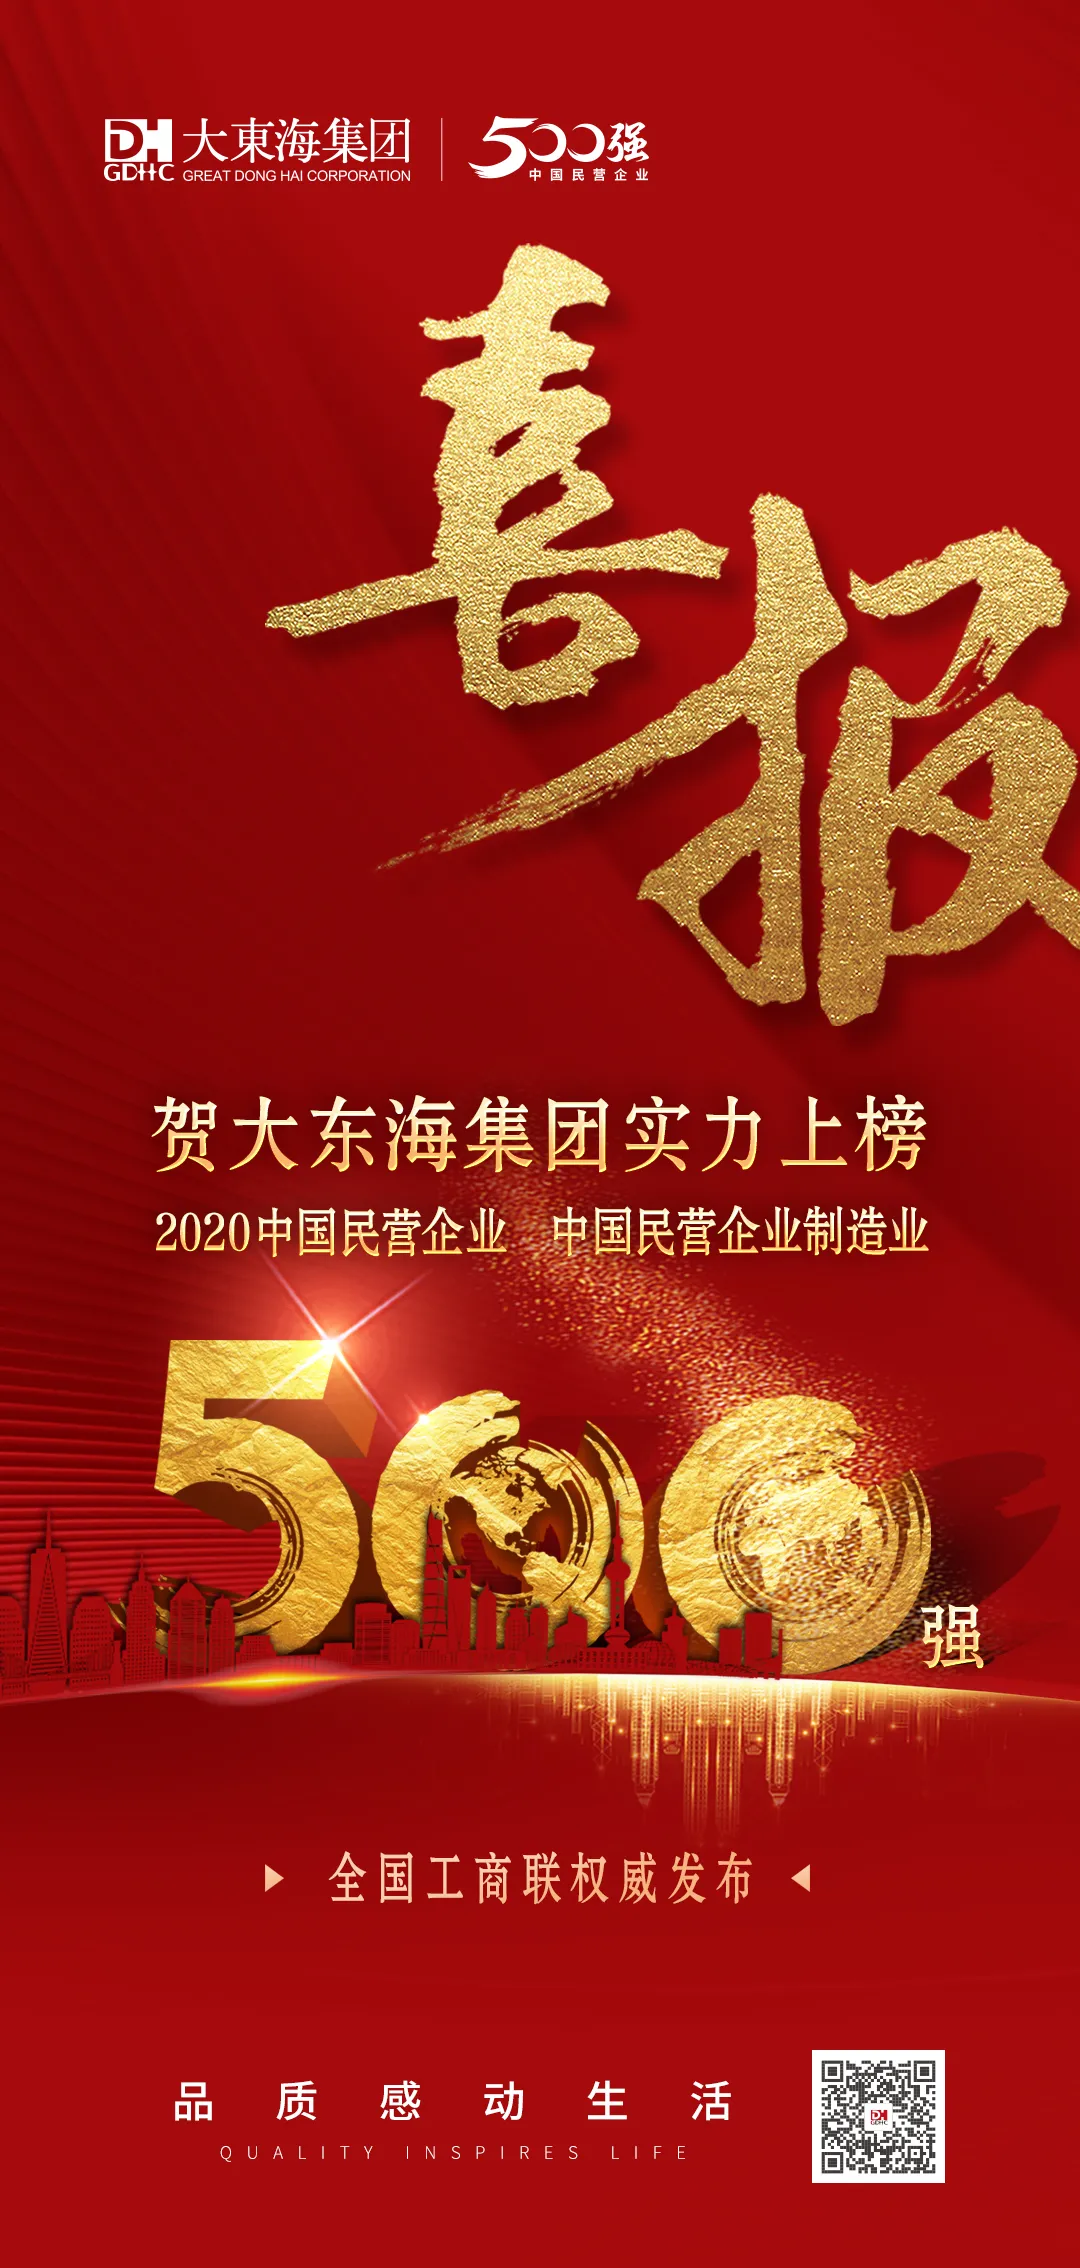 权威发布 | 大东海集团实力上榜中国民营企业500强